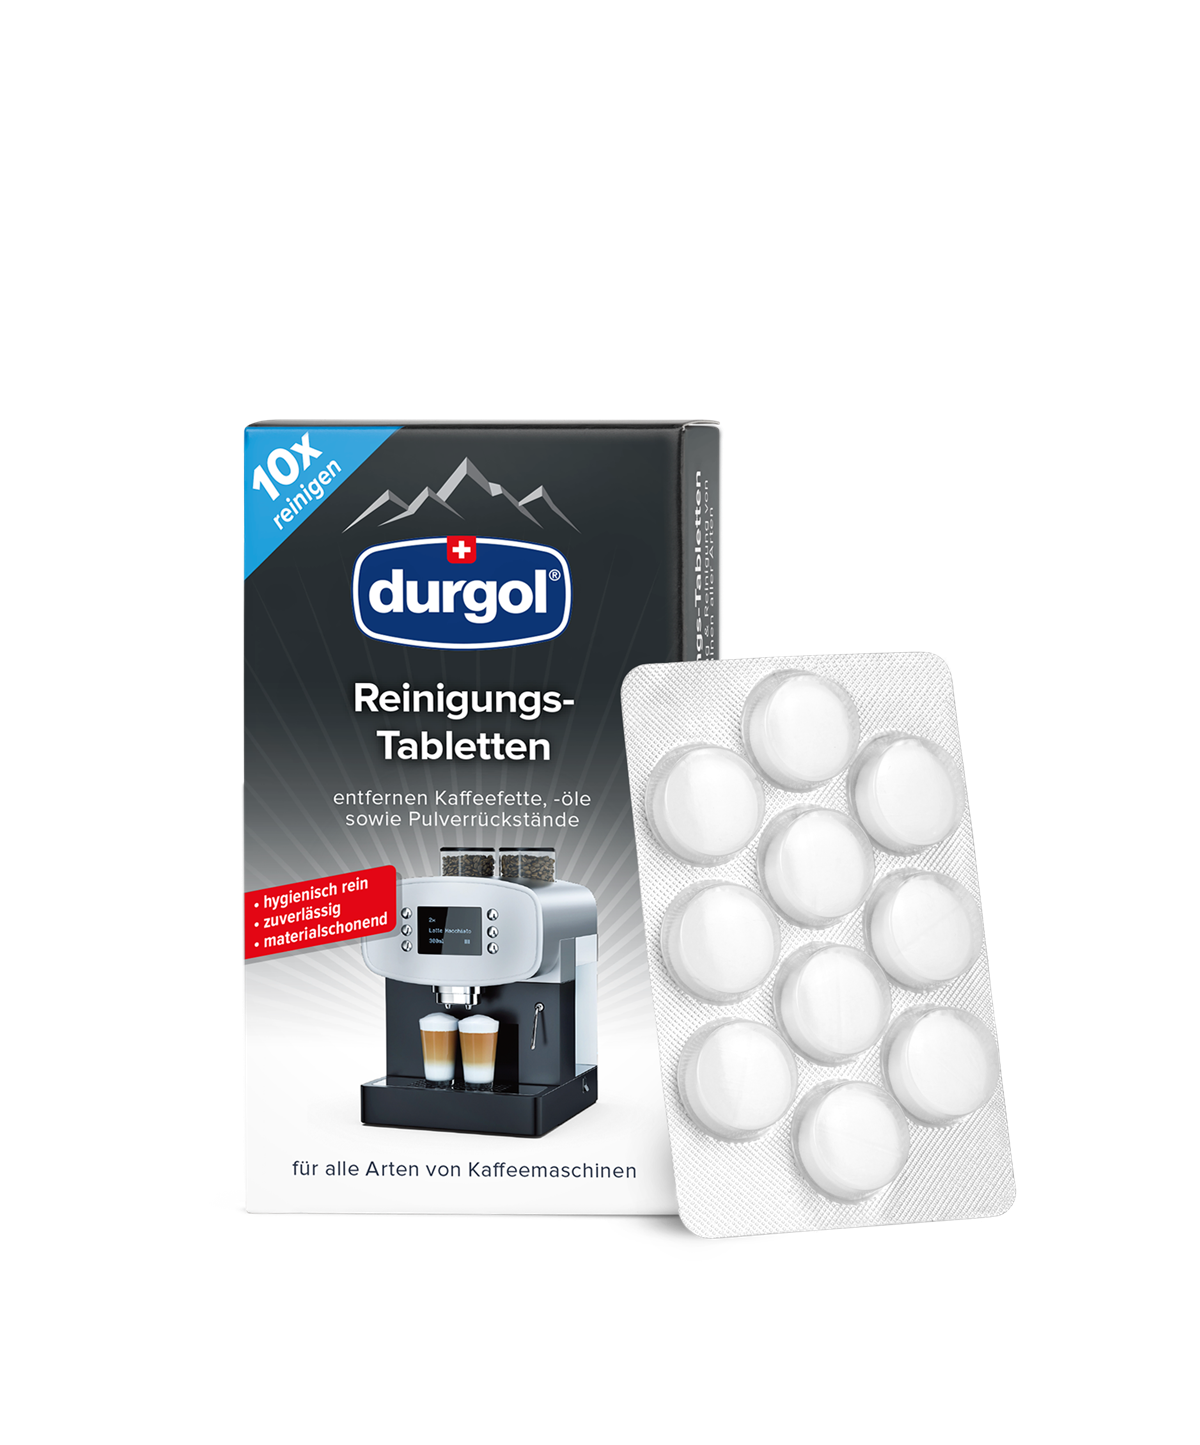 durgol Reinigungs-Tabletten ab jetzt bei Interspar und Spar Gourmet erhältlich (UVP: EUR 5,45)